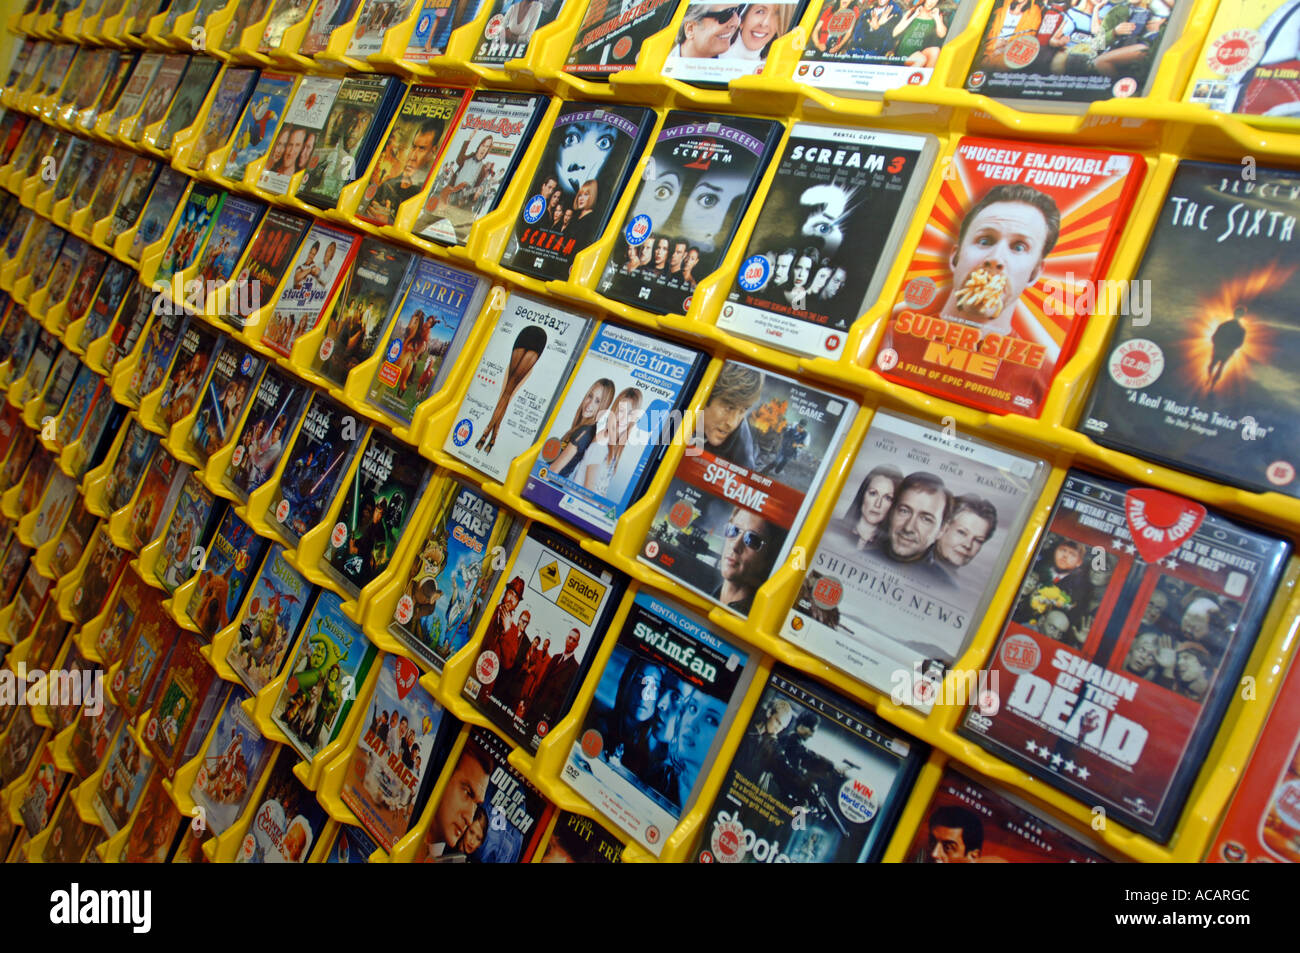 carencia Libro teatro DVD rental store Stock Photo - Alamy